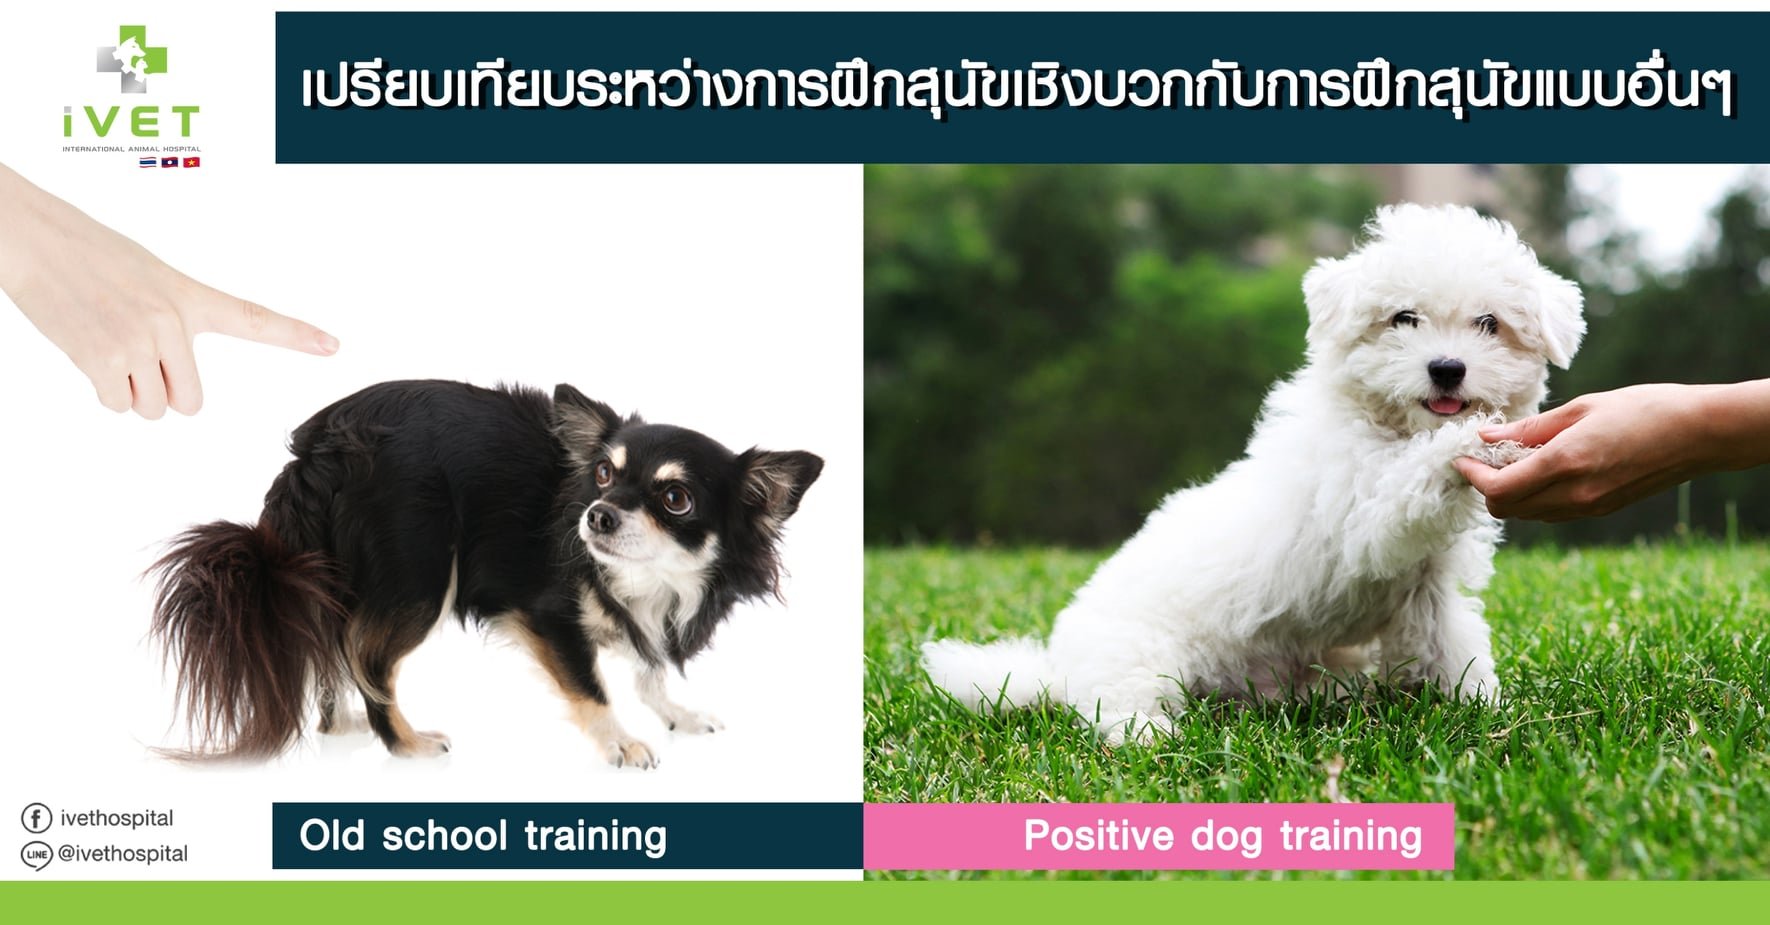 เปรียบเทียบระหว่างการฝึกสุนัขเชิงบวกกับการฝึกสุนัขแบบอื่นๆ